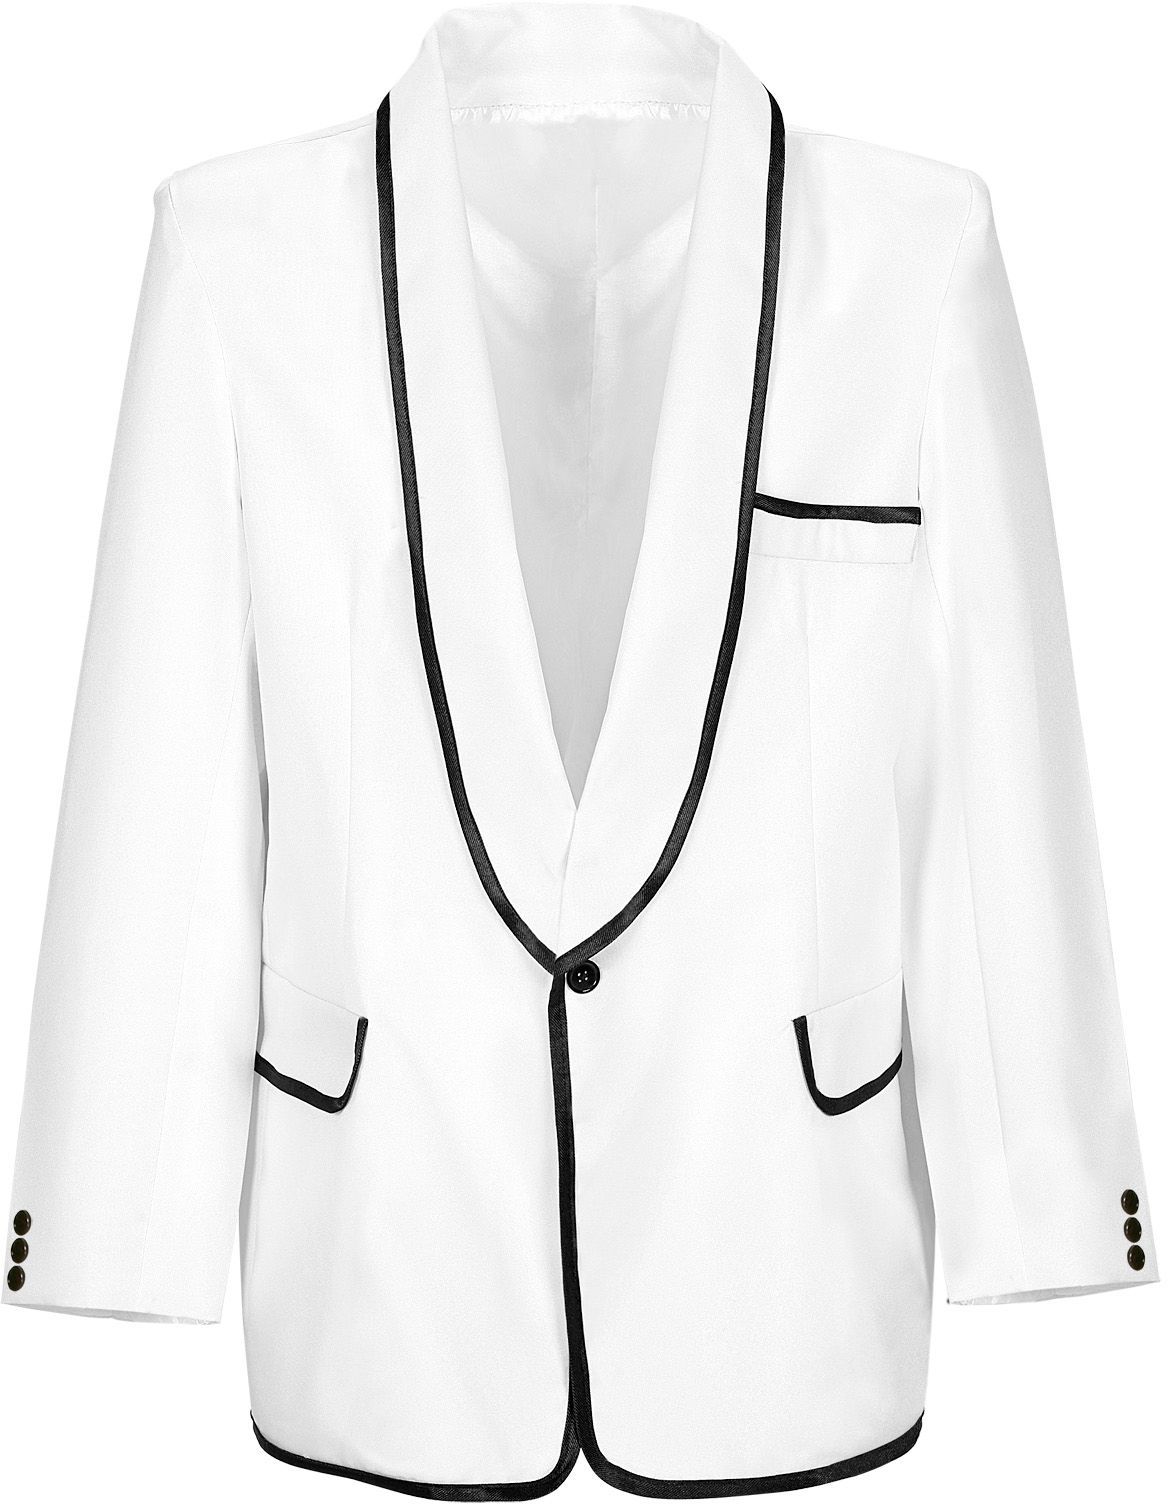 Witte MR Style jasje